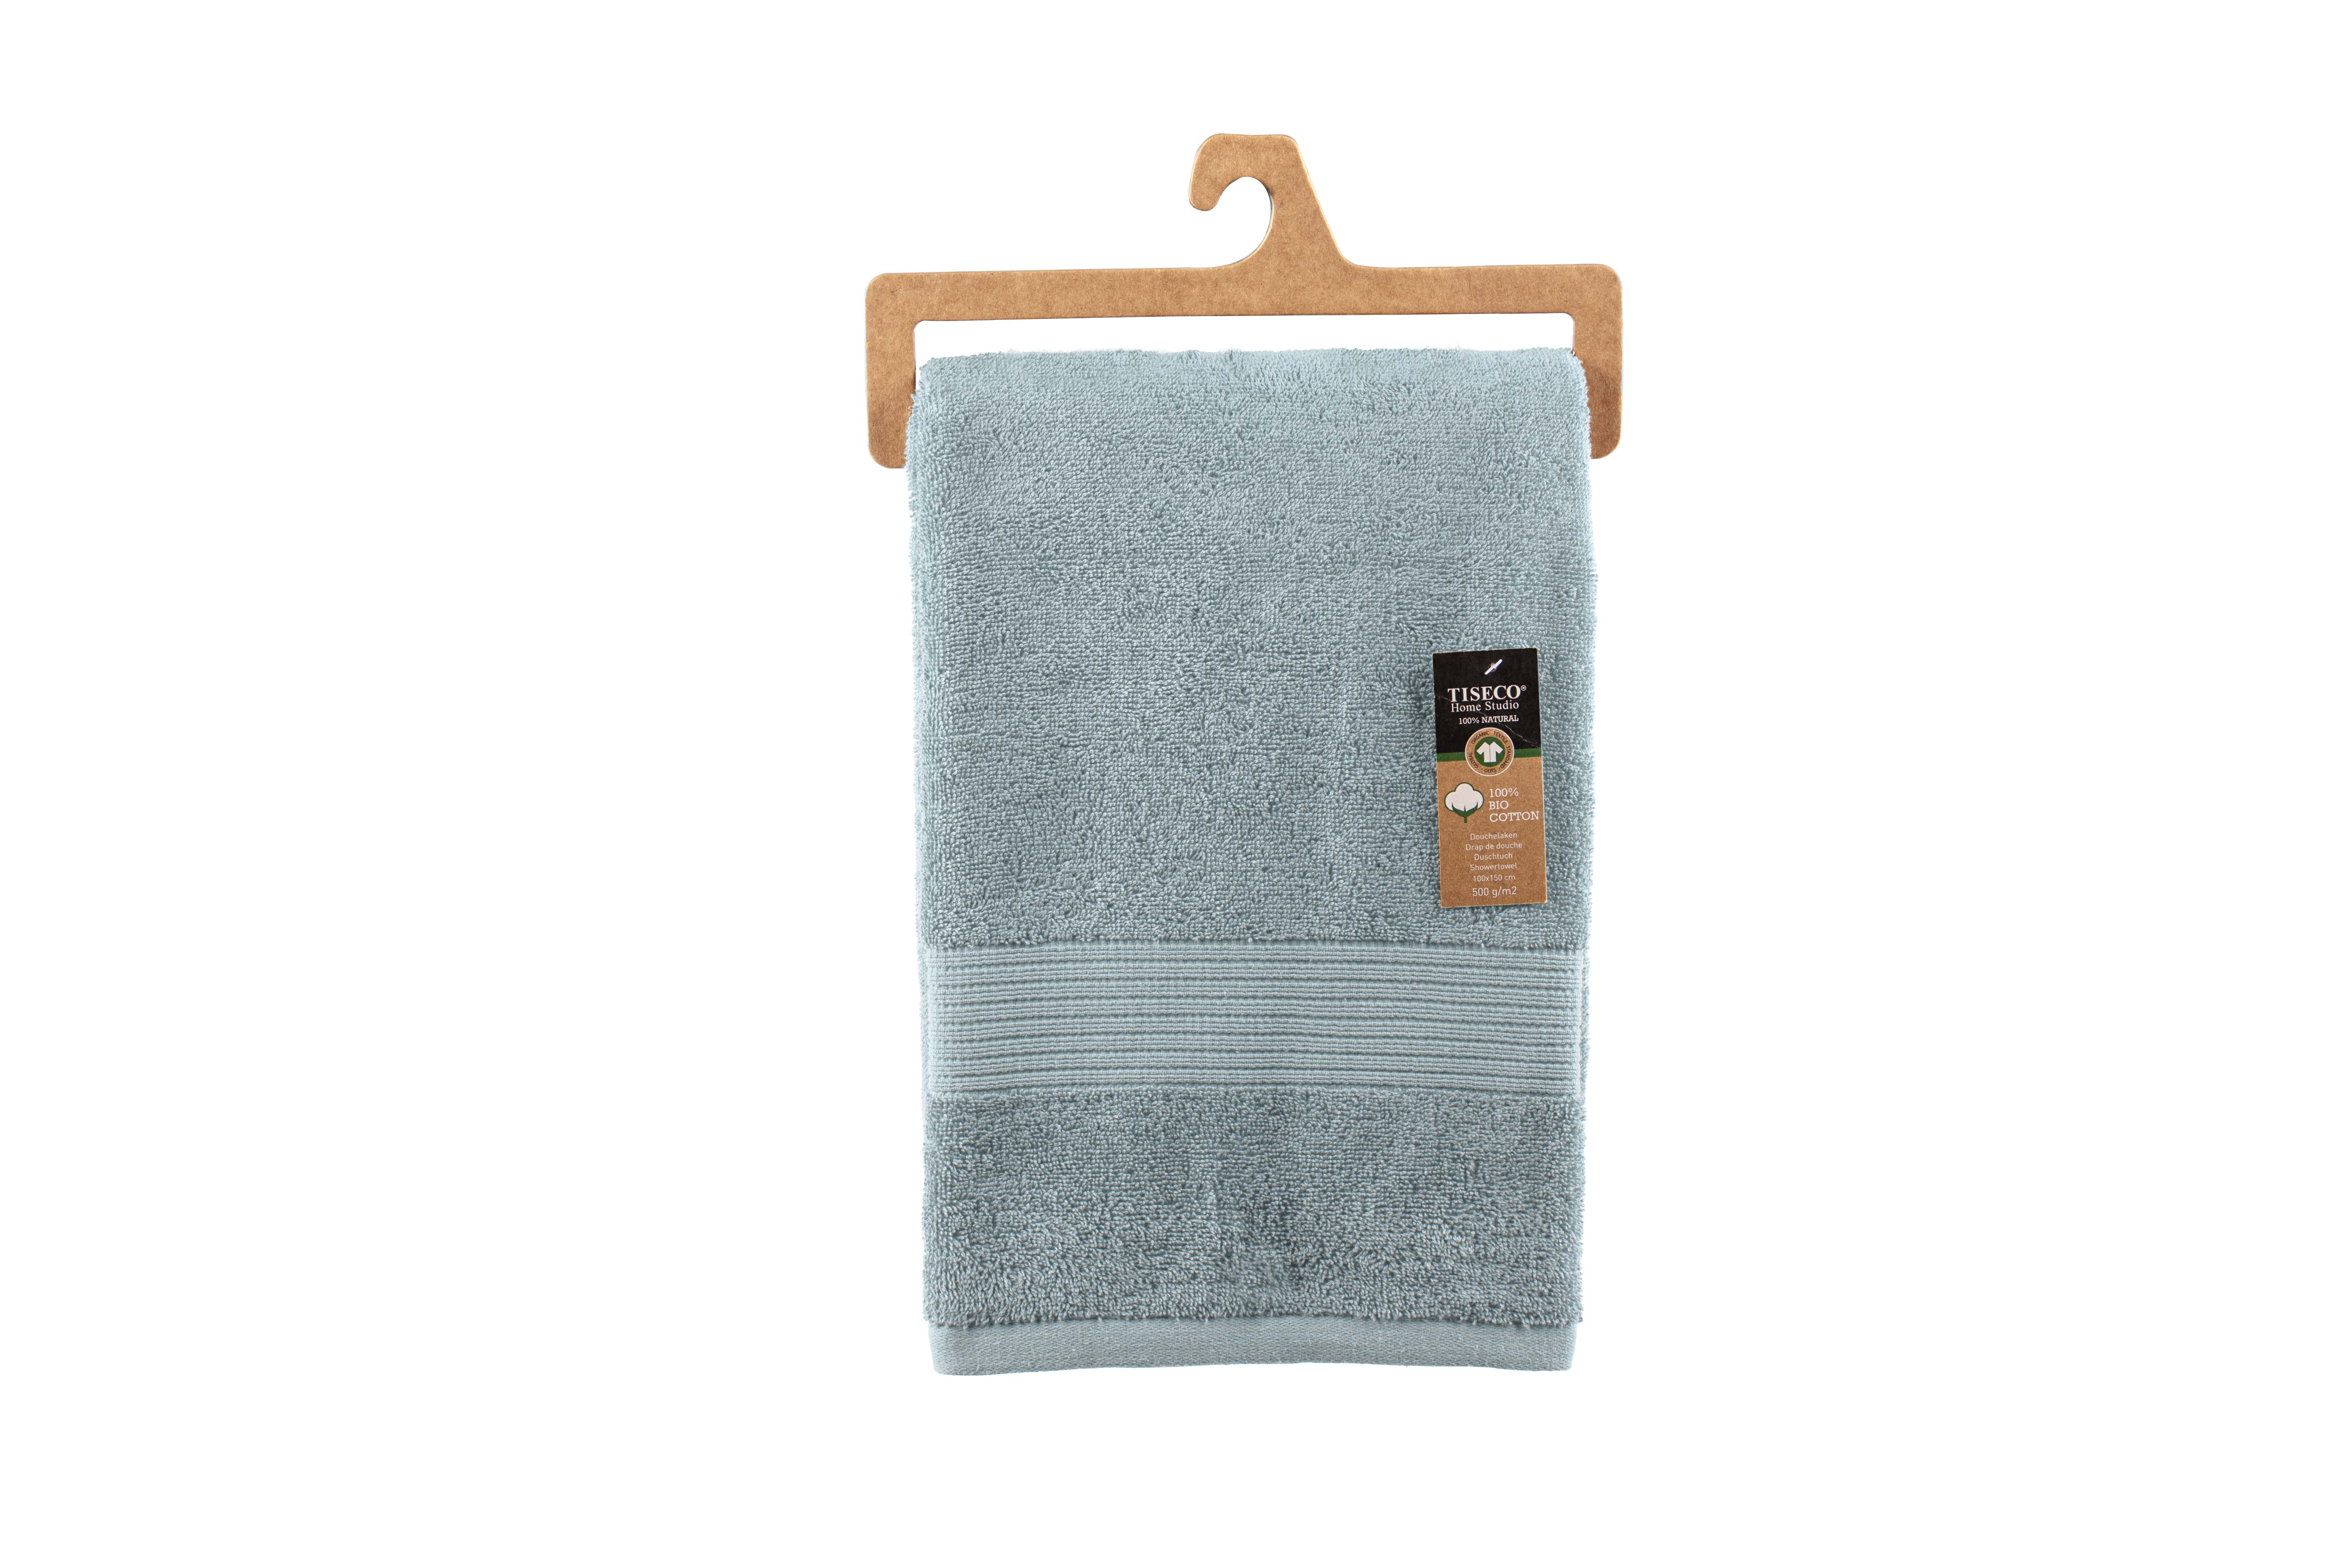 Shower towel EDEN 100x150cm, stone blue